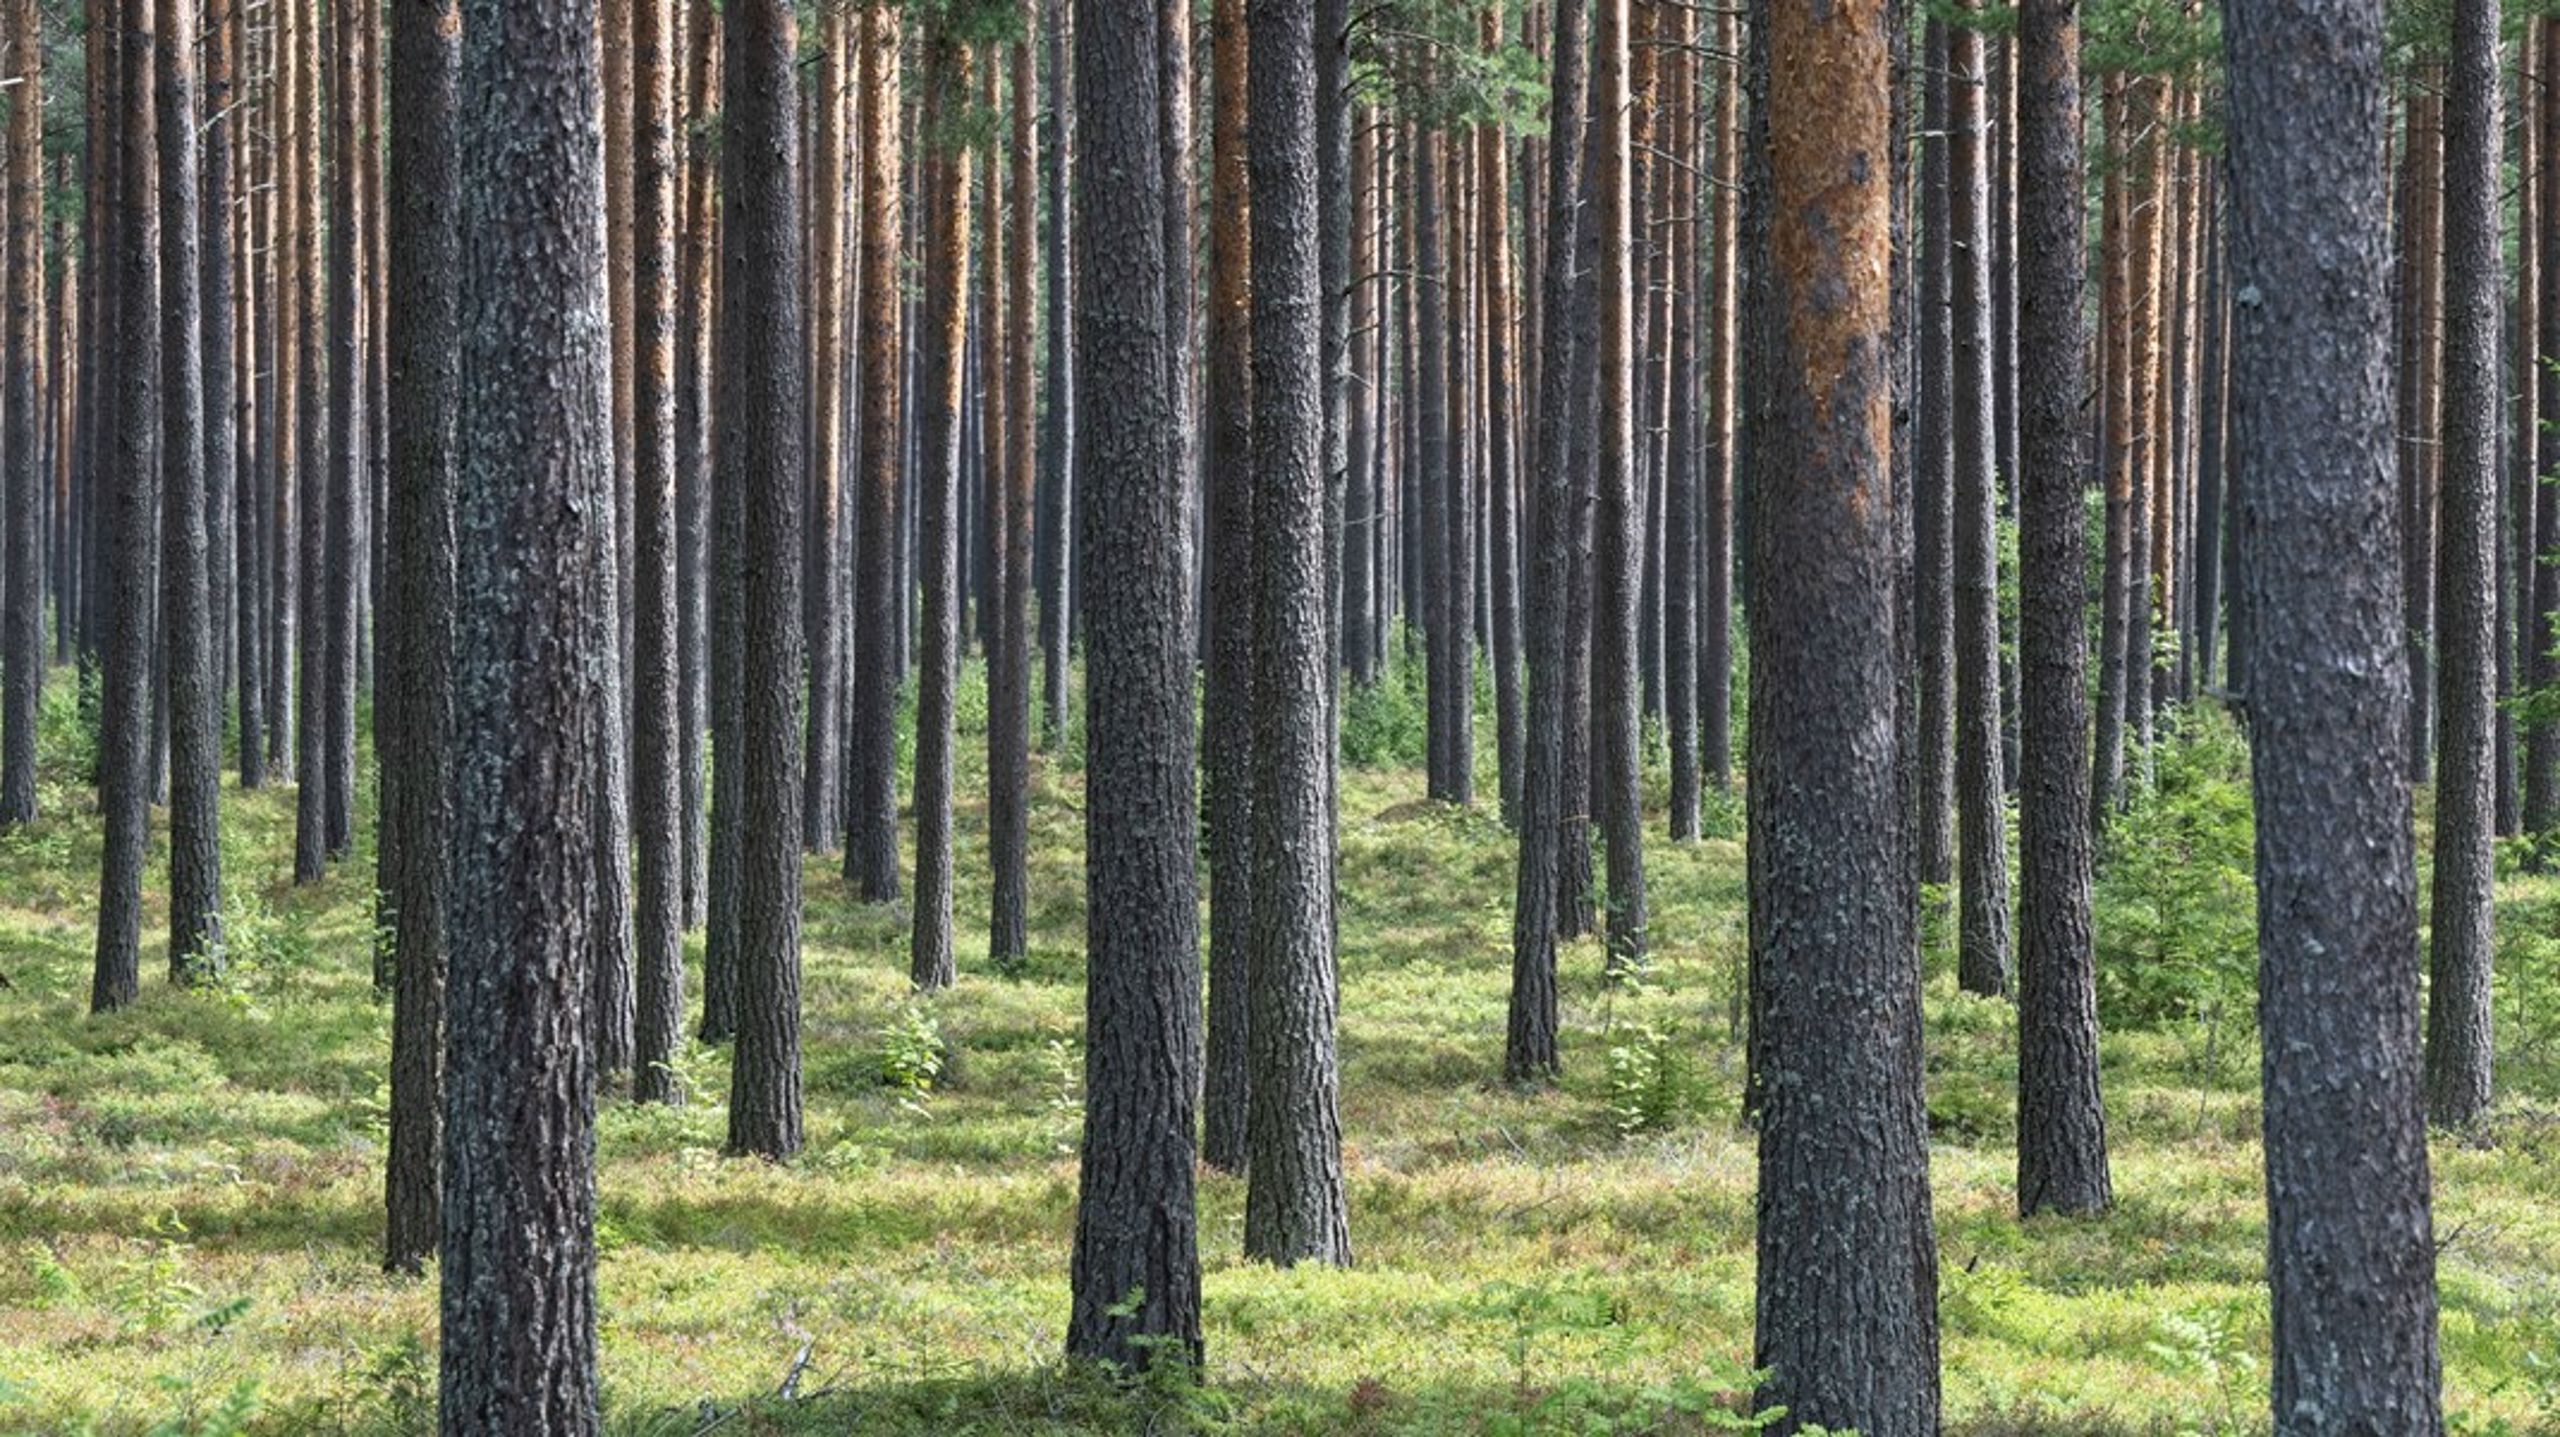 ”Därtill måste regeringen ge kompletterande instruktioner till den nya skogsutredningen att göra sina förslag baserad på just tillgängliga volymer och inget annat”, skriver professor Nilsson.